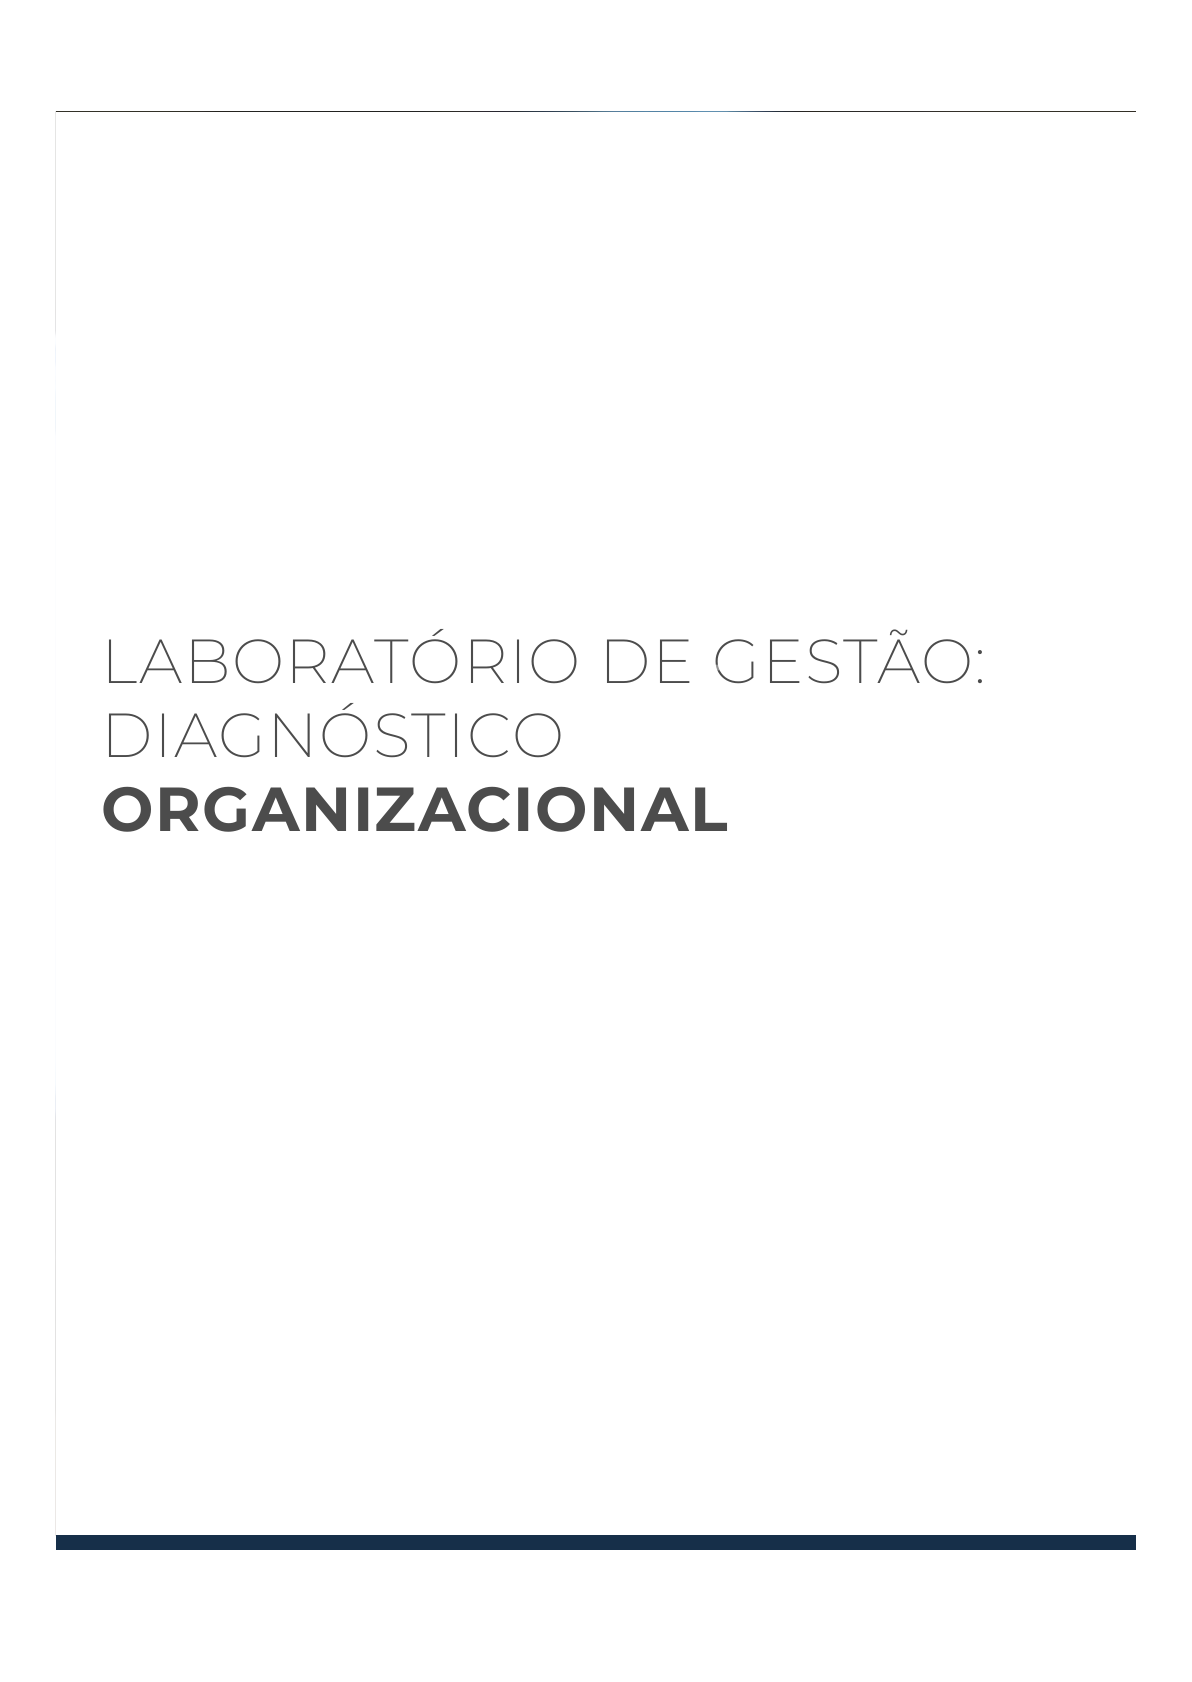 Laboratório de gestão: simulador organizacional, jogo de empresas